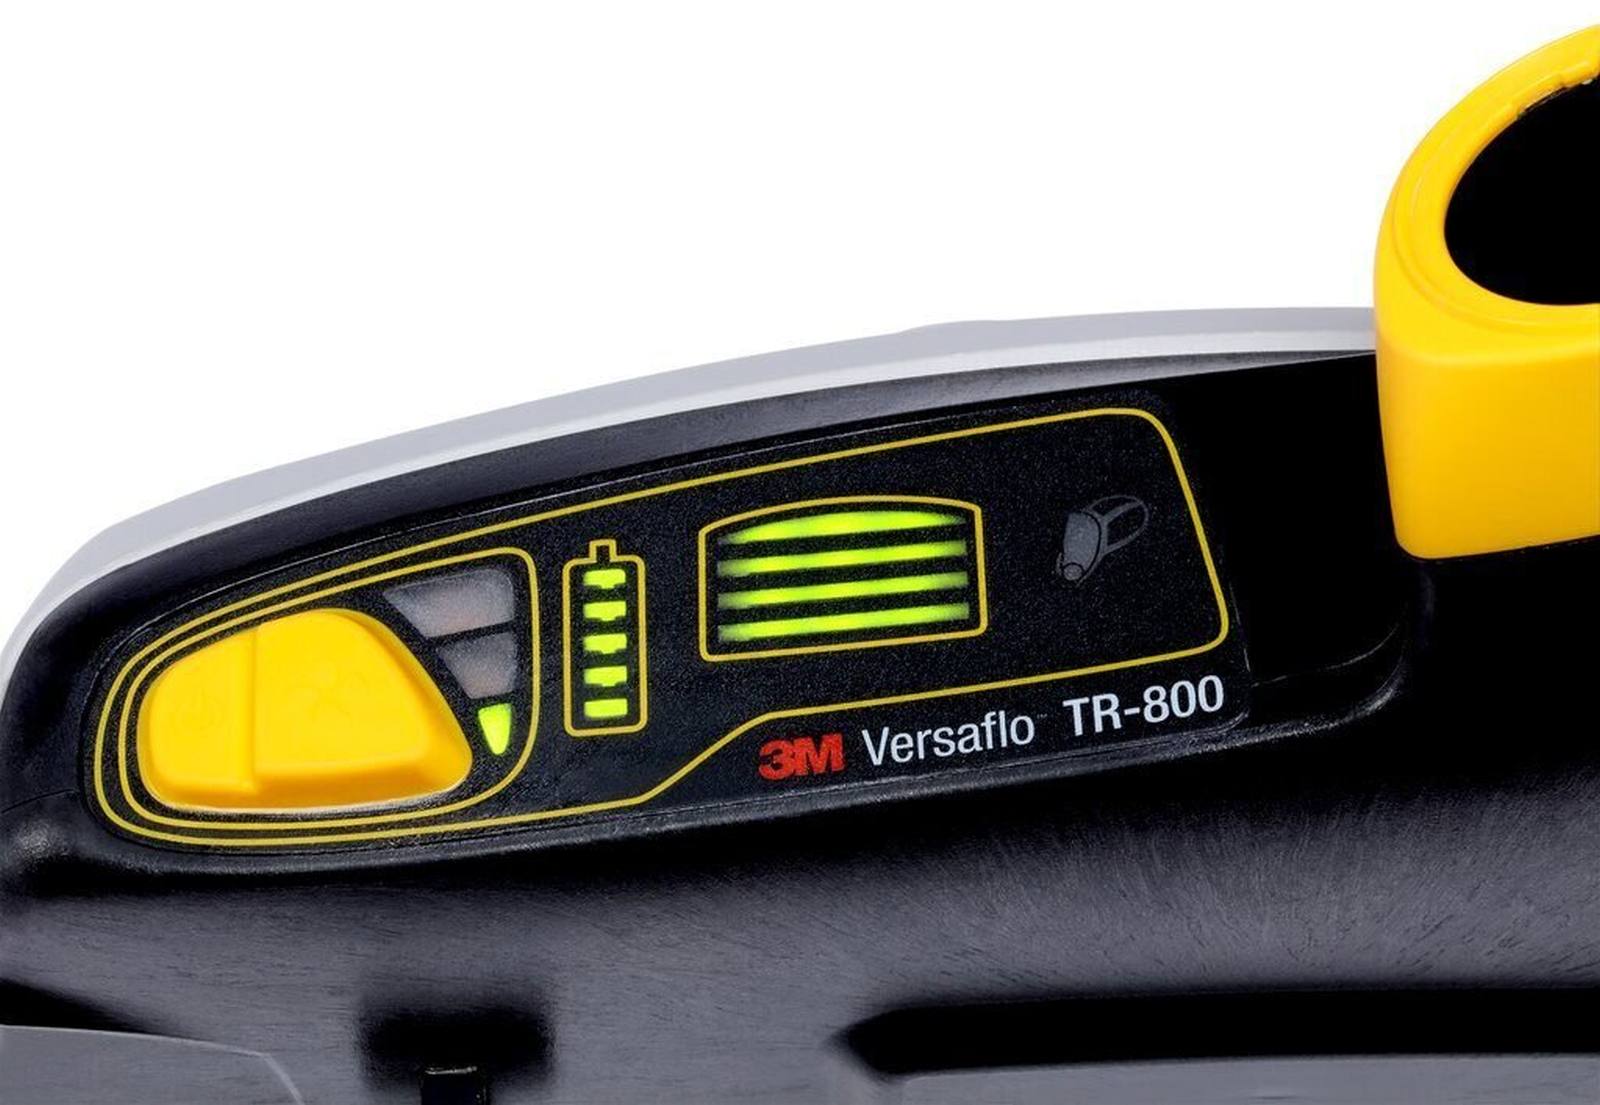 3M TR-819E IS Versaflo-Starterpaket Ex-Schutz mit Gebläseeinheit TR-802E, 1x A2P Filter, 2x Vorfilter, Standard-Gürtel, 1x Batterie, Werkzeug zur Befestigung der Batterie, Ladegerät, BT-30 längenverstellbarer Luftschlauch, Luftstromindikator